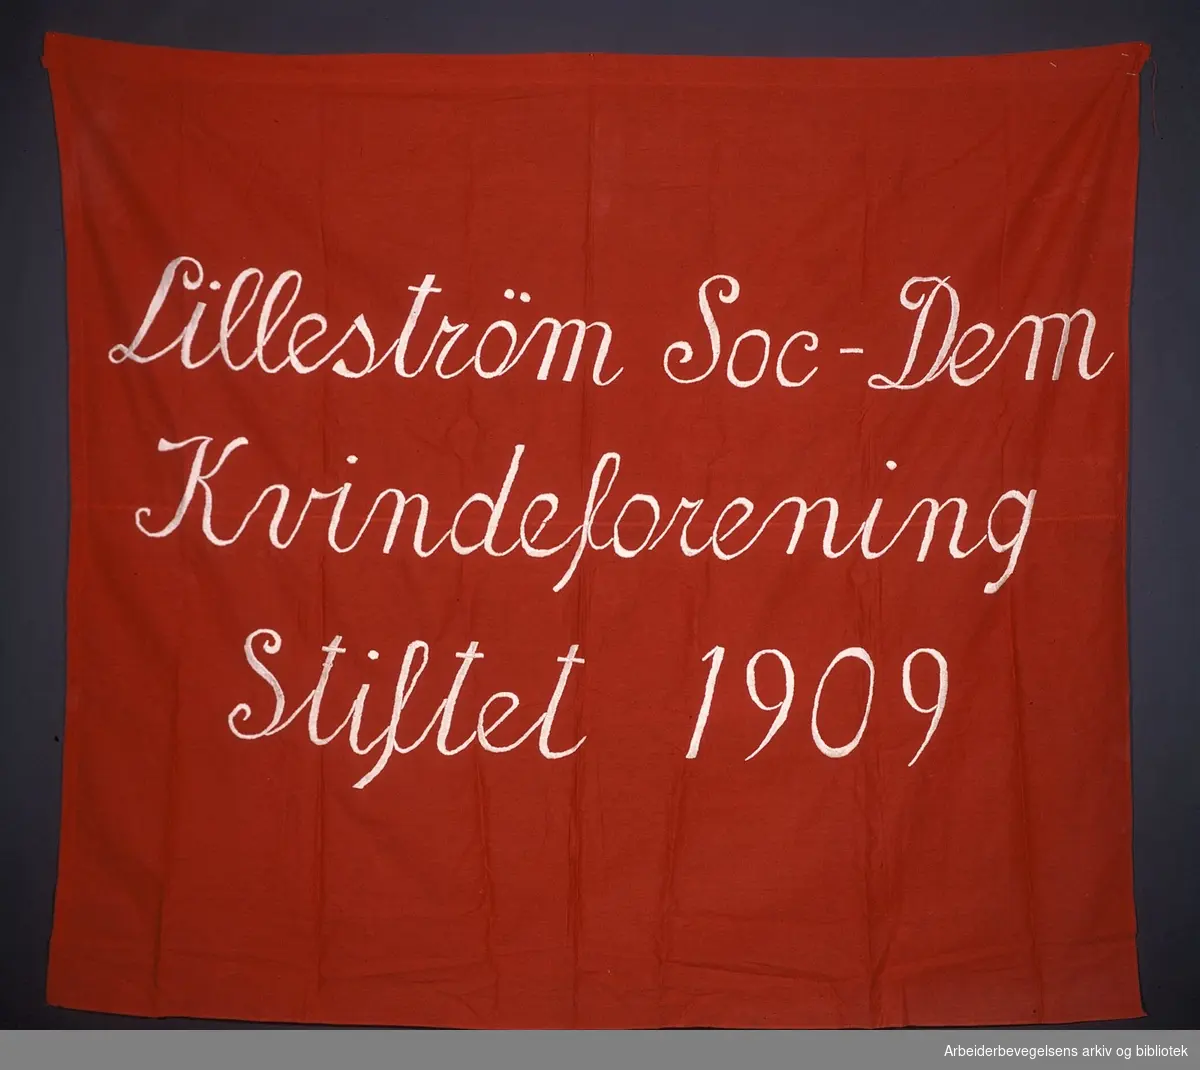 Lillestrøm social-demokratiske kvindeforening .Stiftet 1909..Forside..Fanetekst: Lillestrøm Soc-Dem Kvindeforening Stiftet 1909